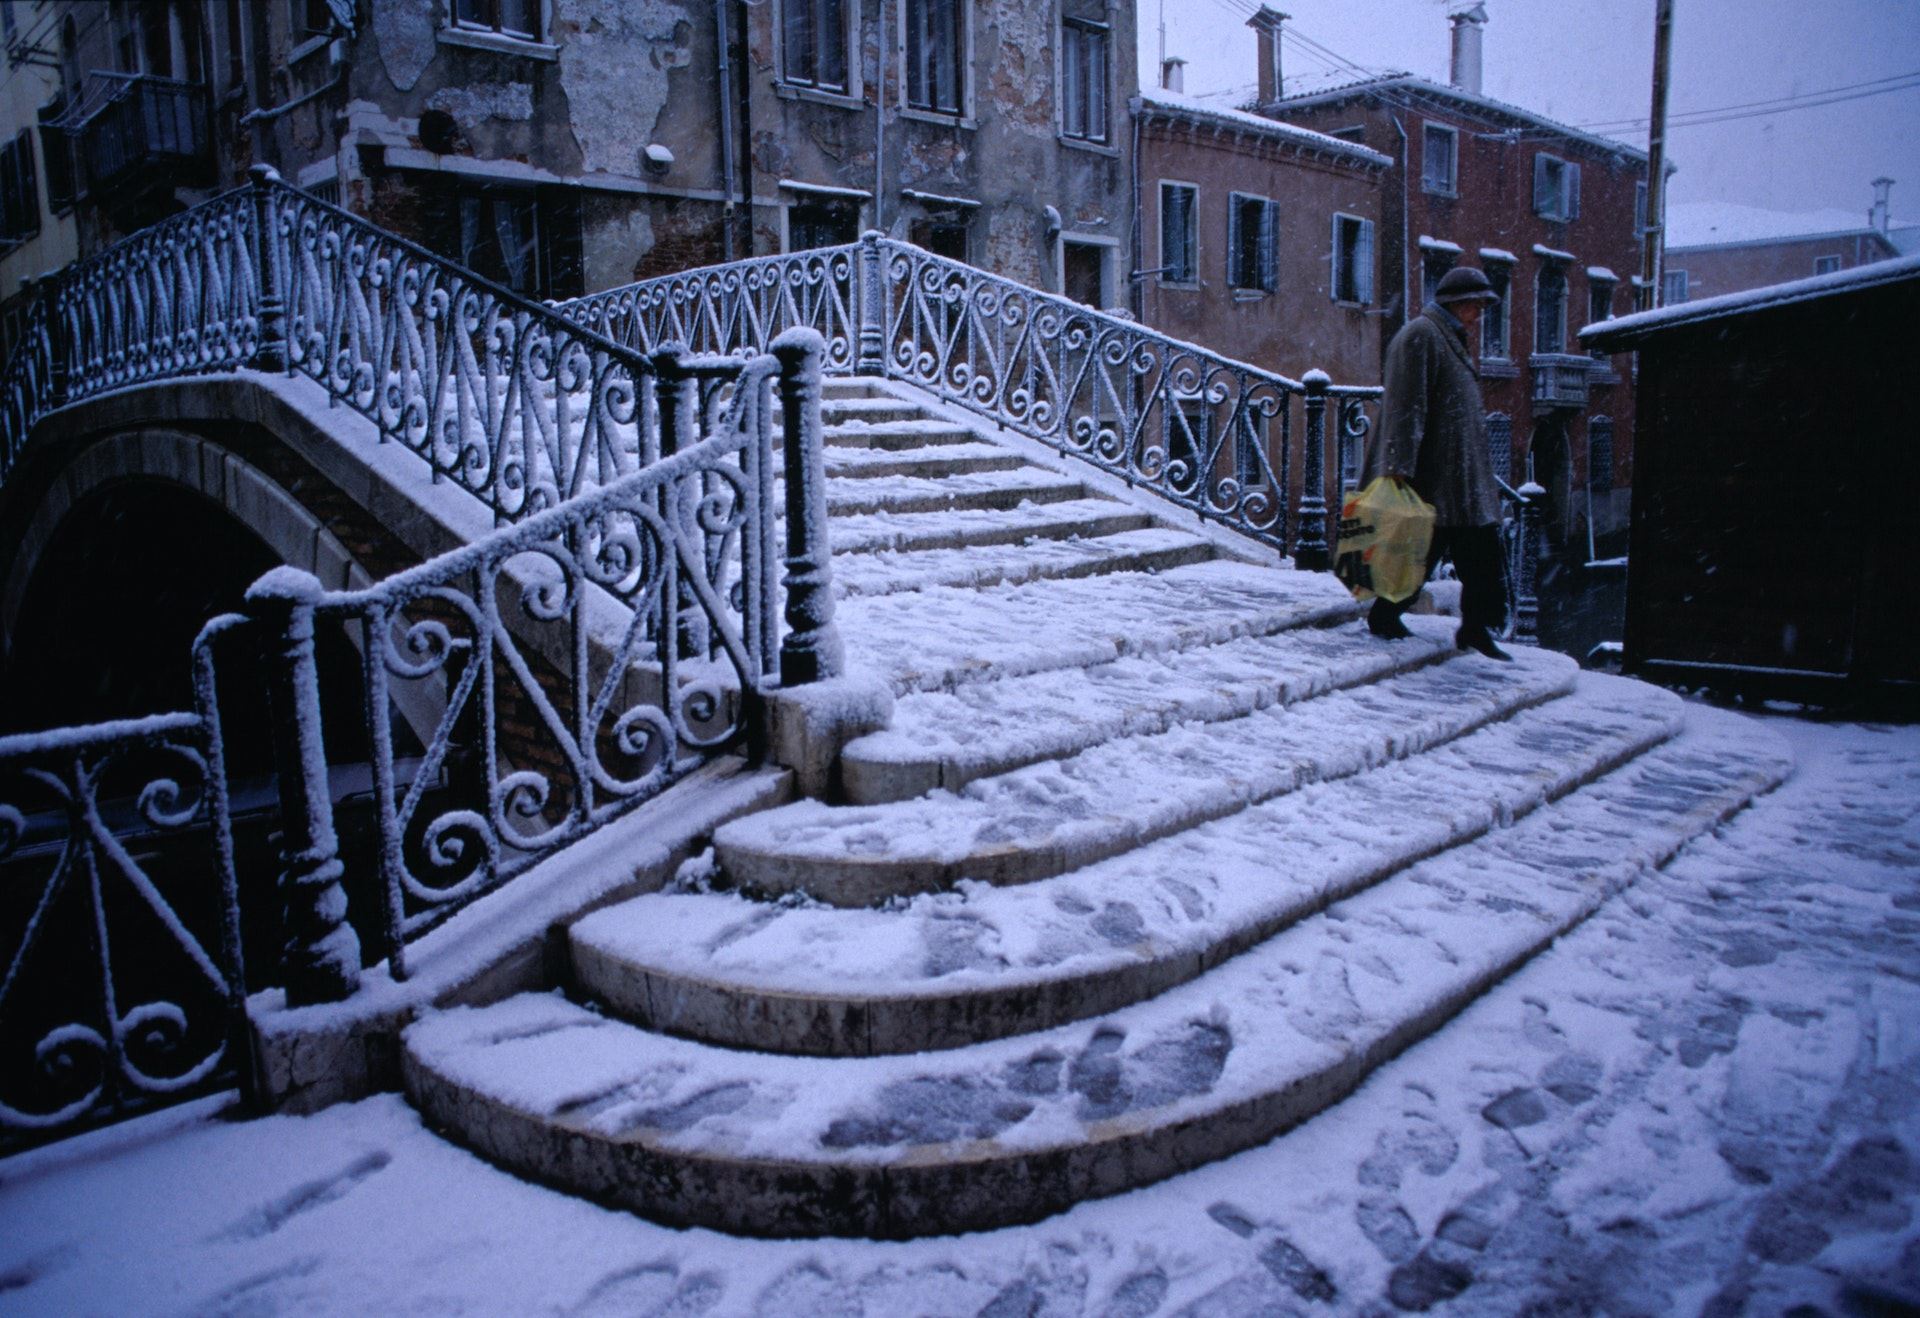 Snow covers Fondamenta della Sensa, the bridge that leads to the historic Jewish quarter.